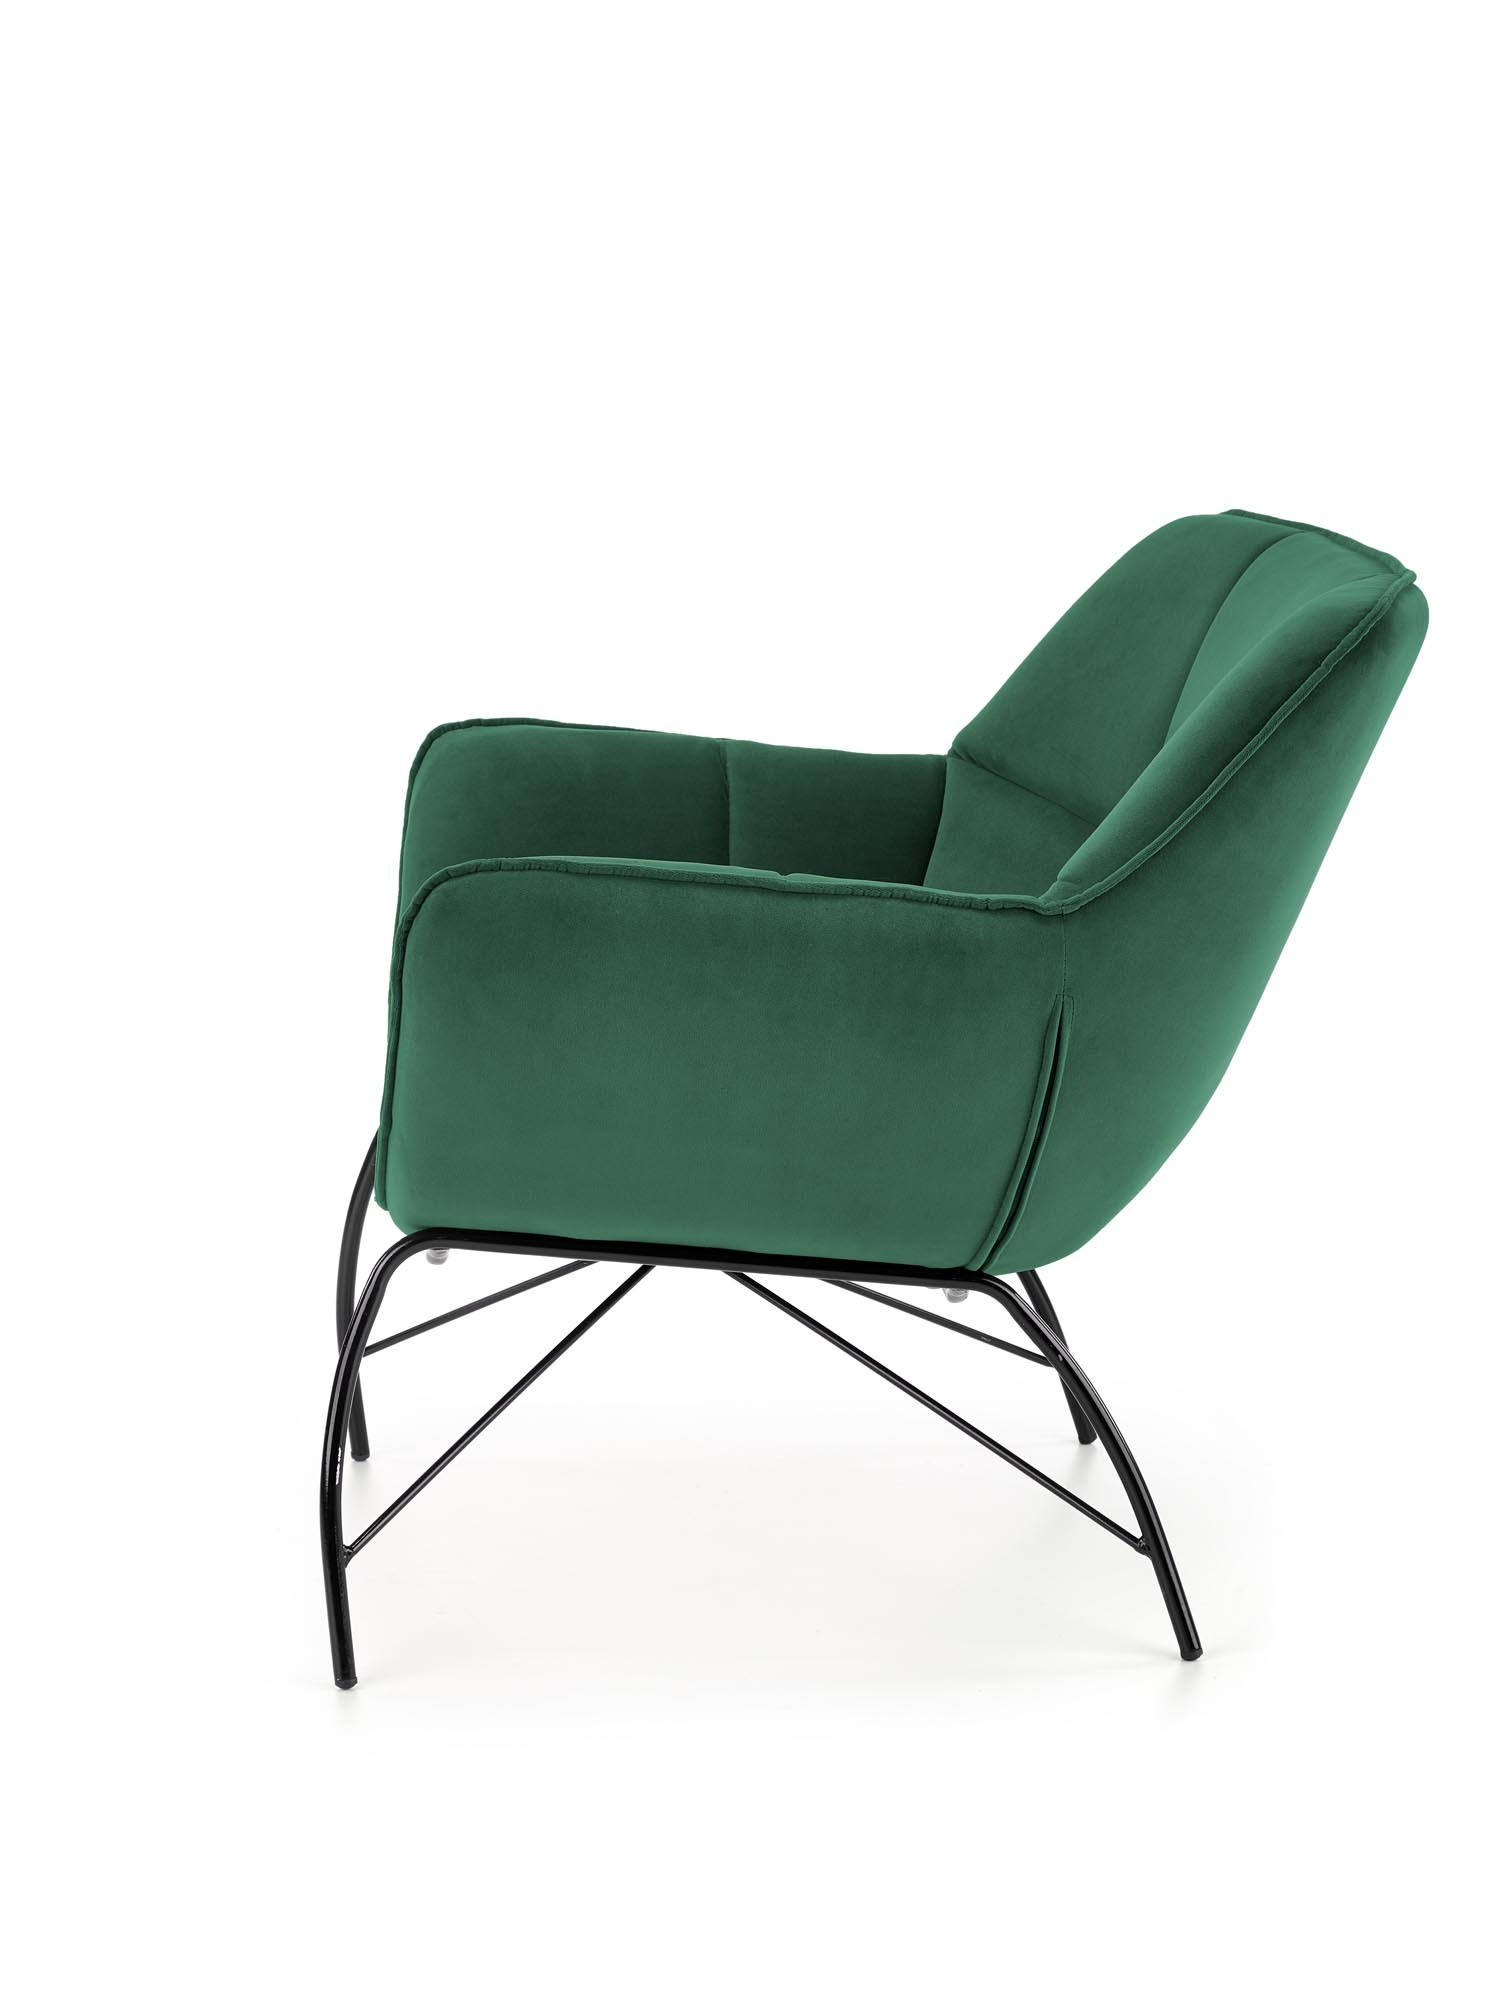 BELTON fotel wypoczynkowy ciemny zielony (1p=1szt)